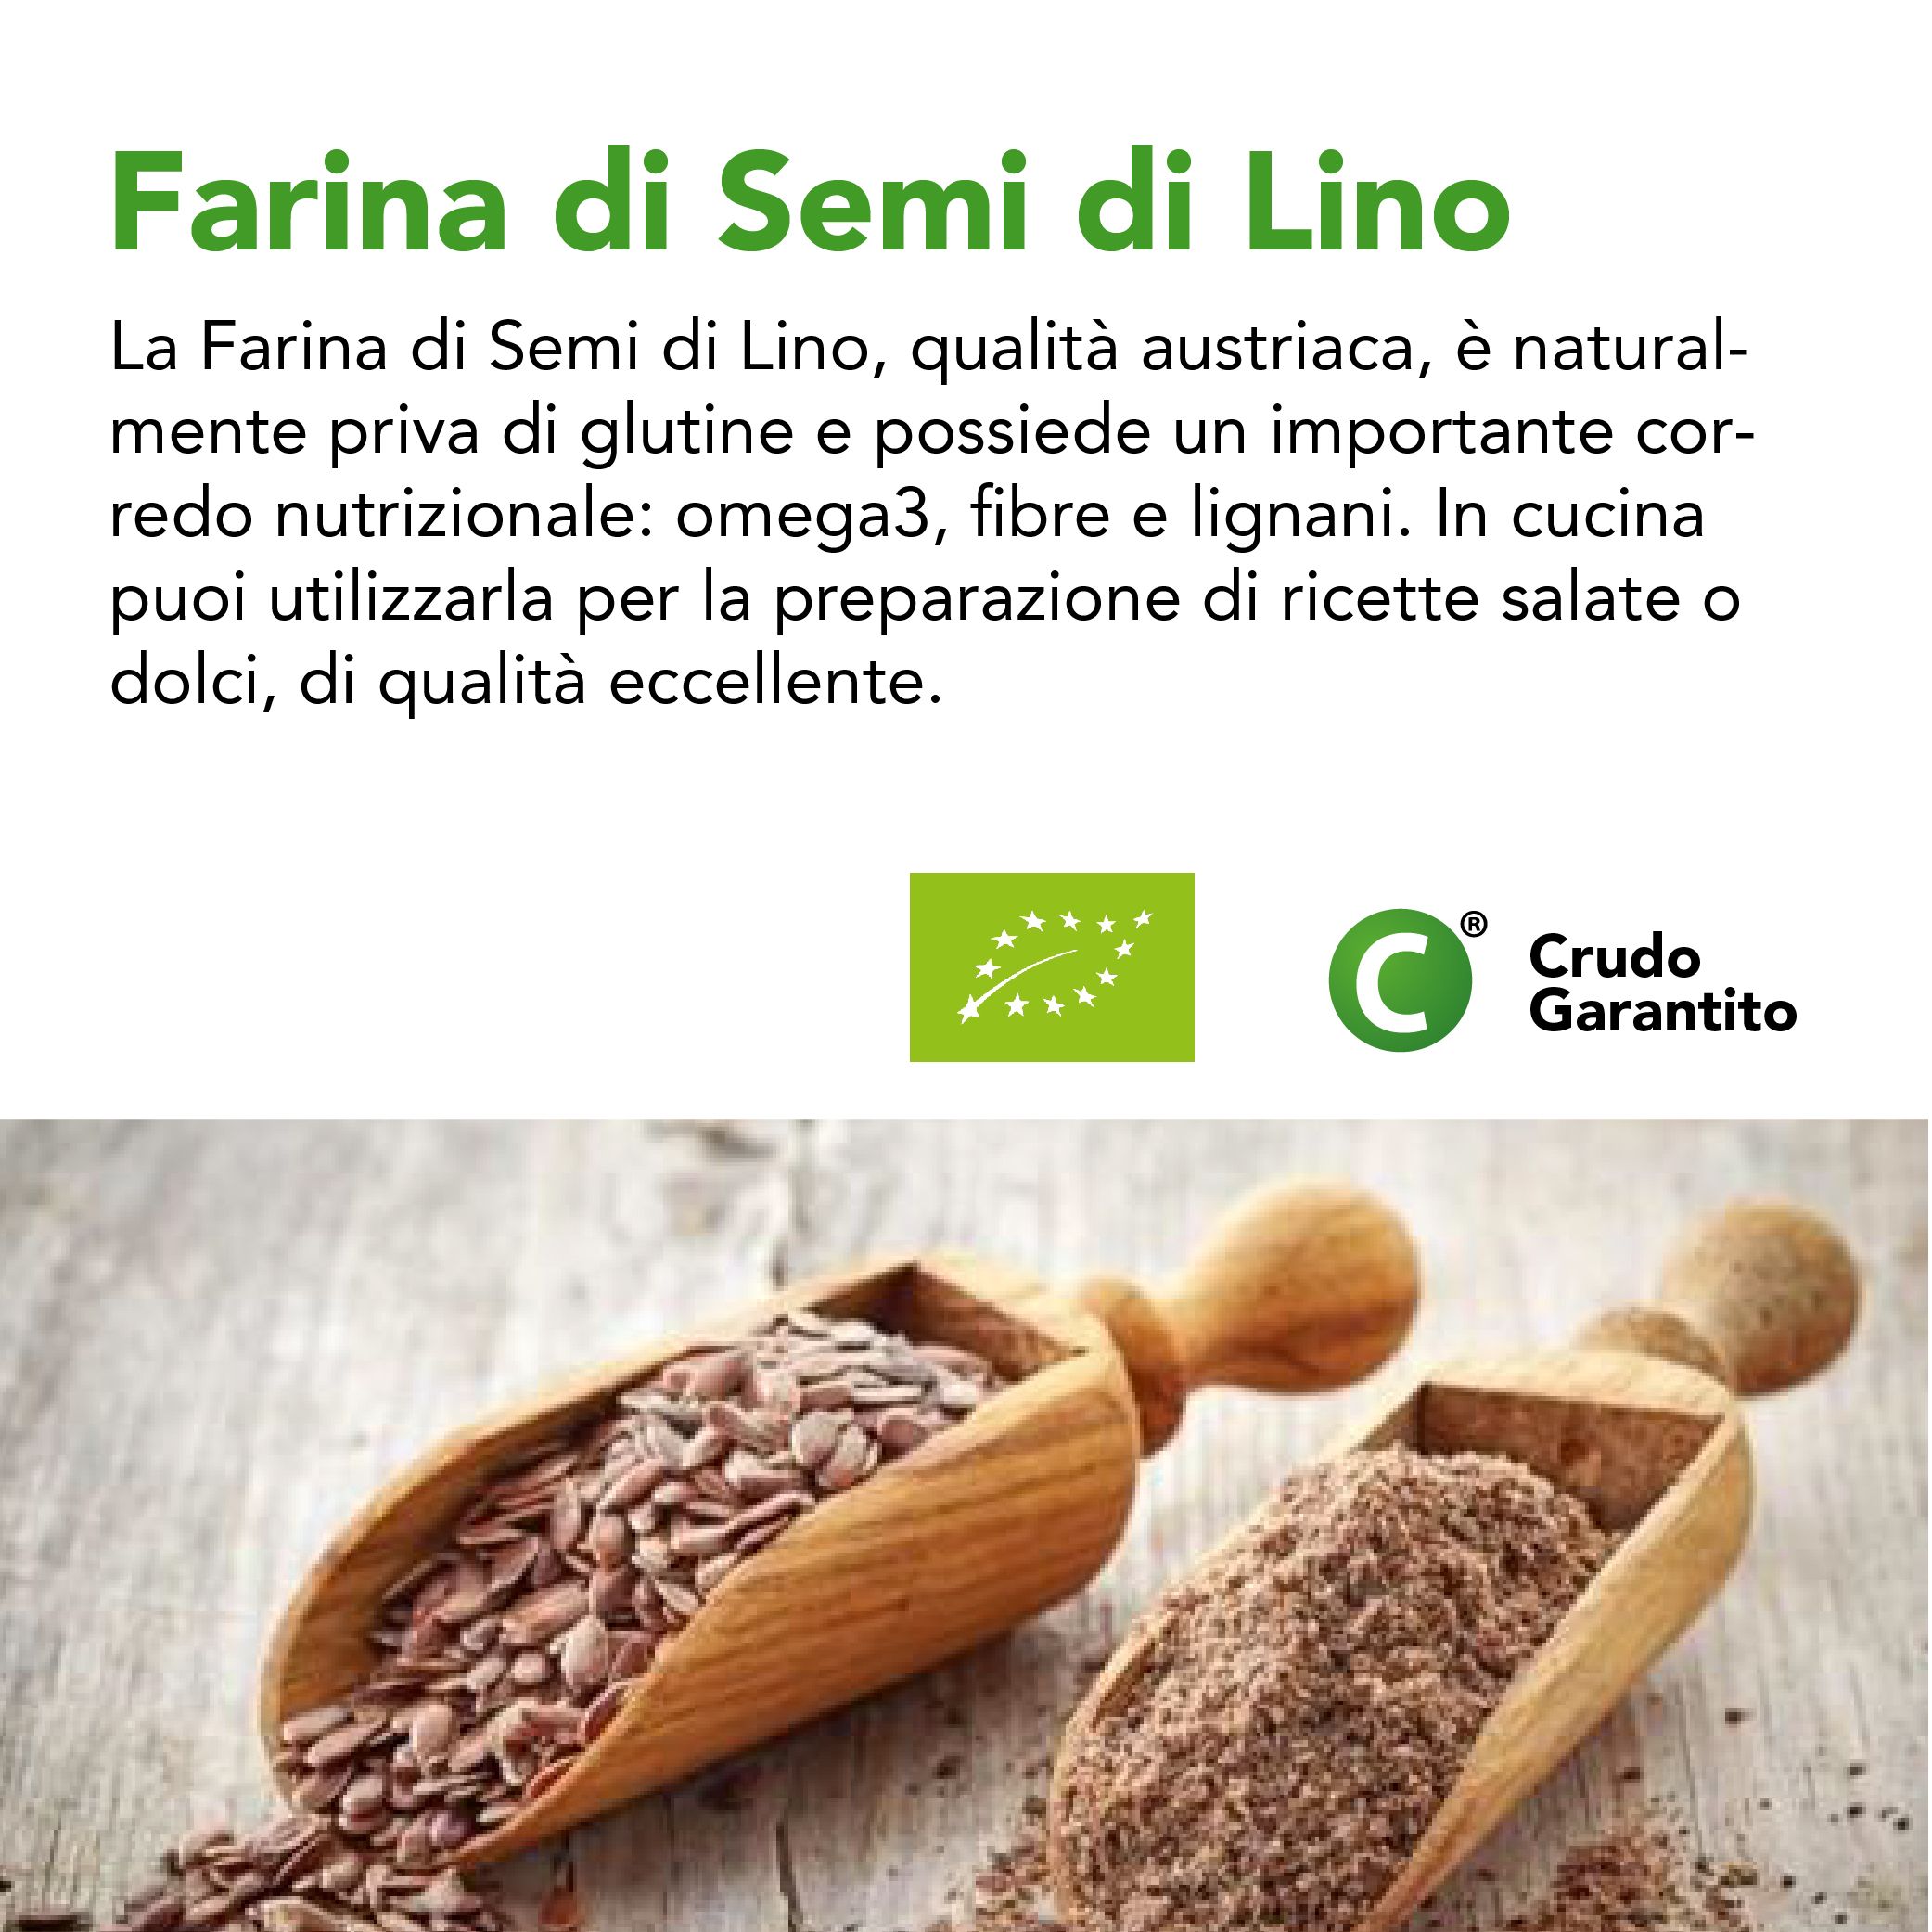 Farina di semi di lino: proprietà, benefici e ricette - fem